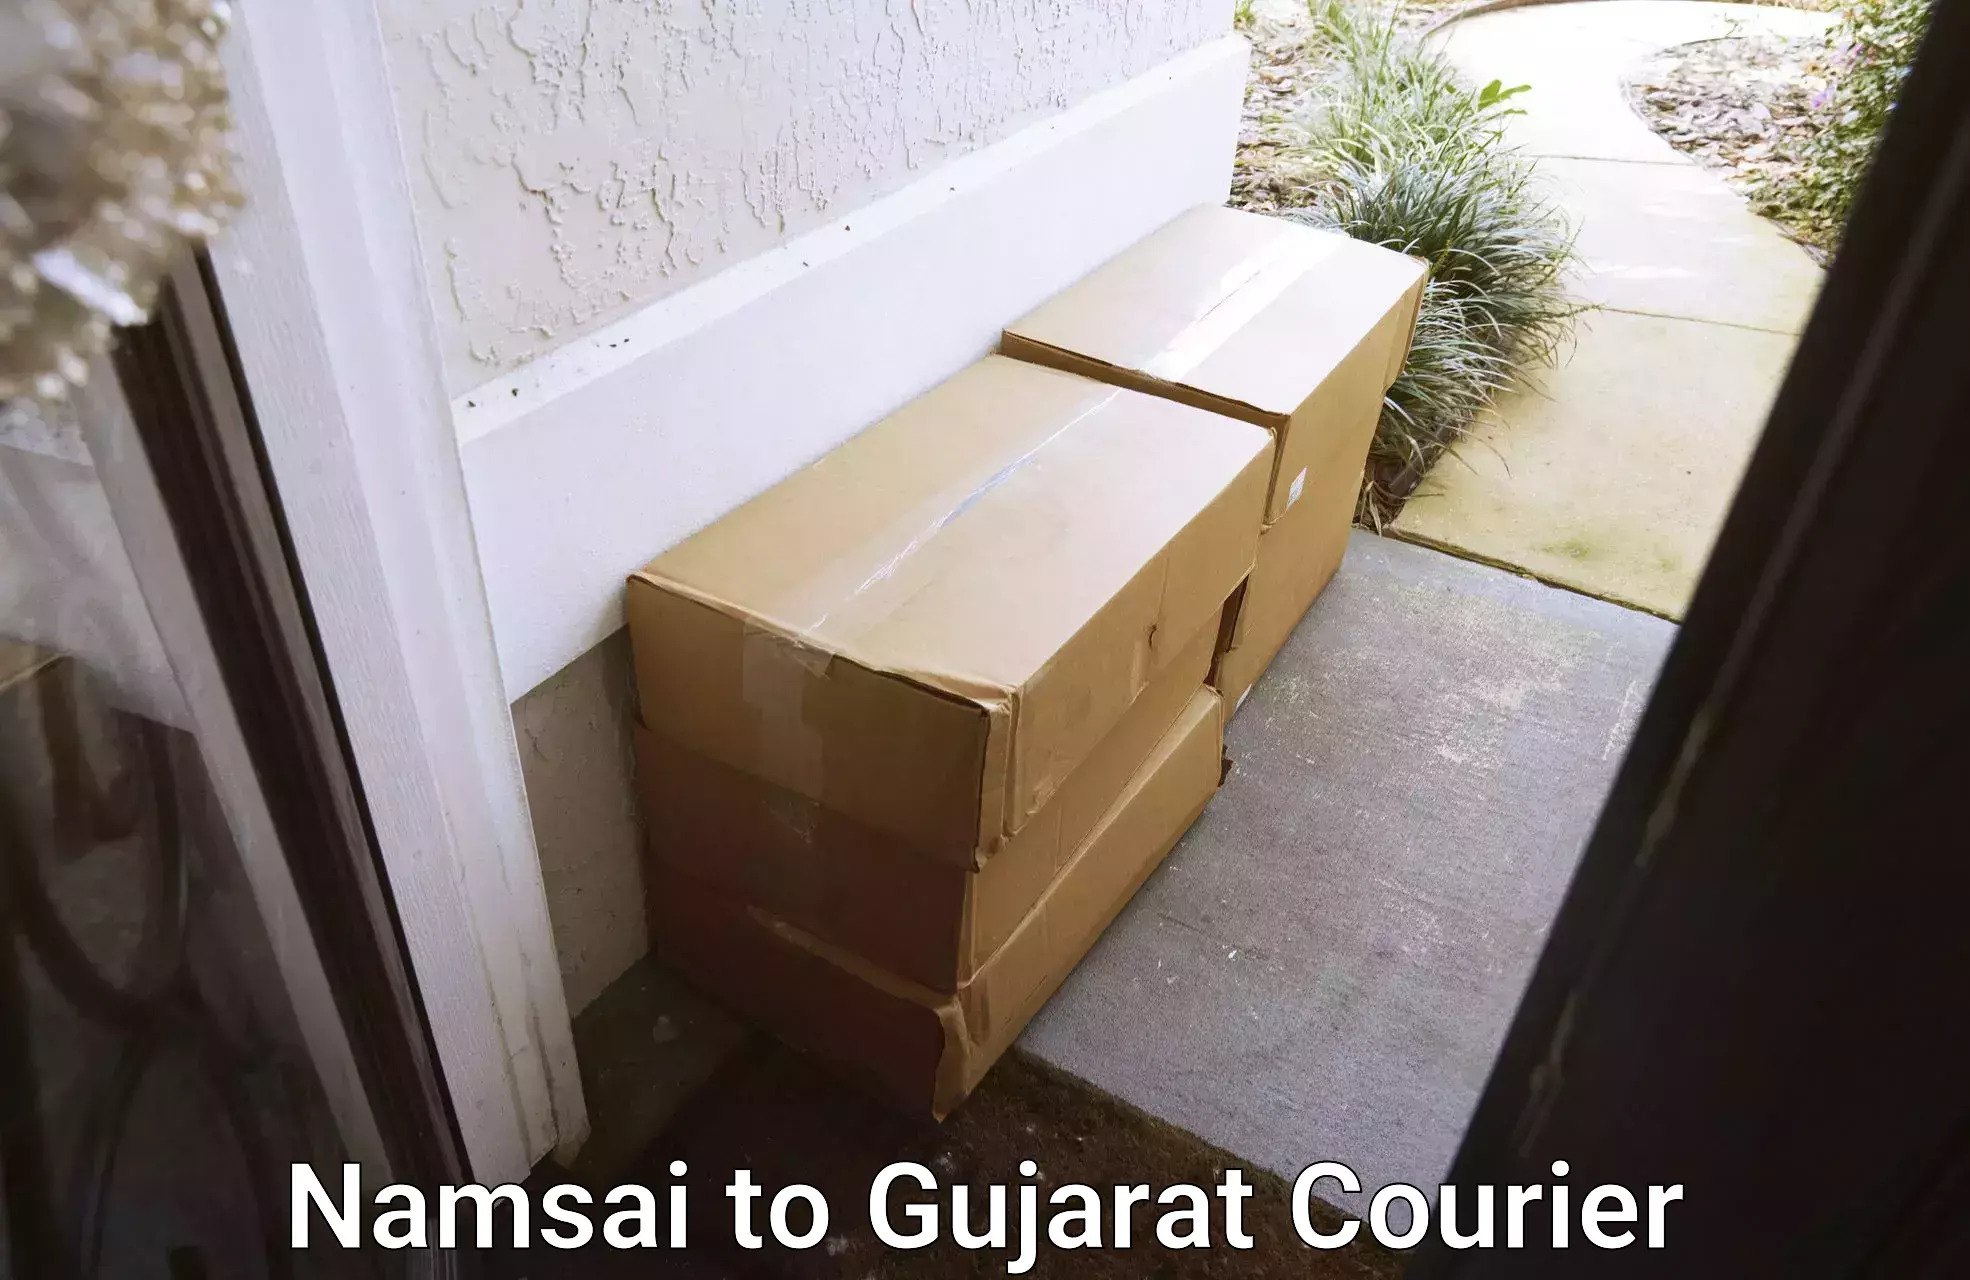 High-speed parcel service Namsai to Dholera